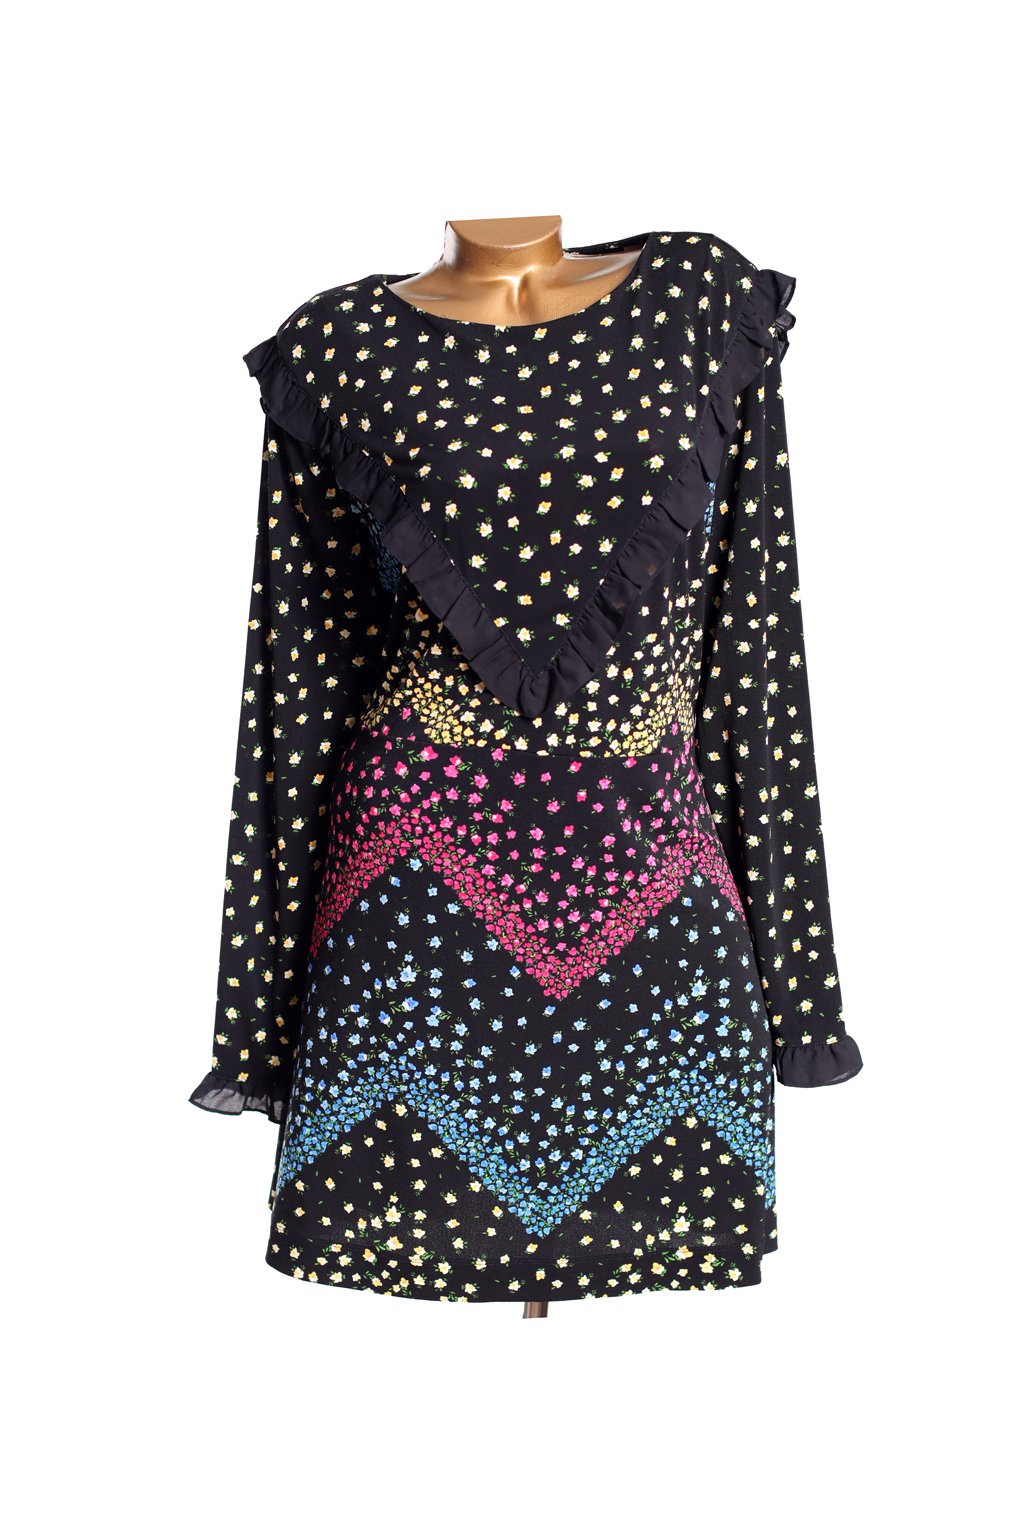 Dámské černé šaty s barevným květinovým vzorem / NEXT - XXL (46) / ANGLIE